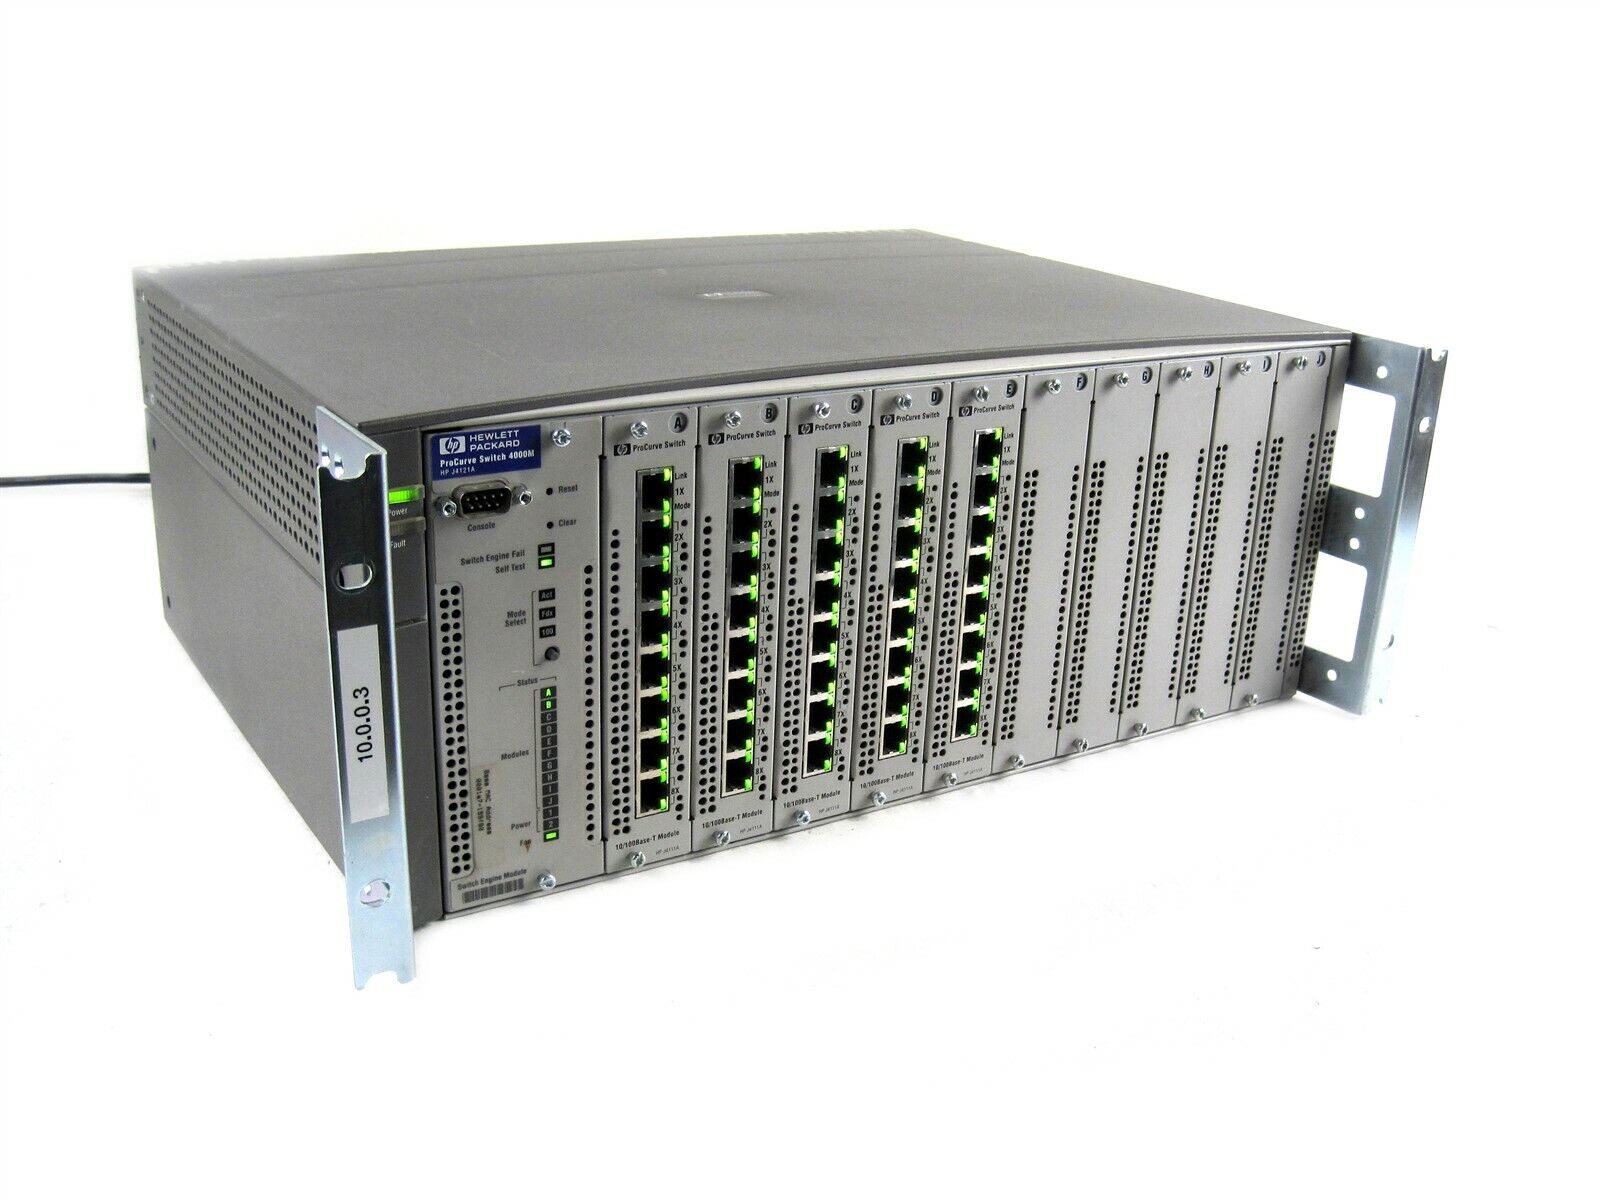 Hewlett Packard HP J4121A ProCurve Switch 4000M/8000M+(5) 10/100Base-T Modules